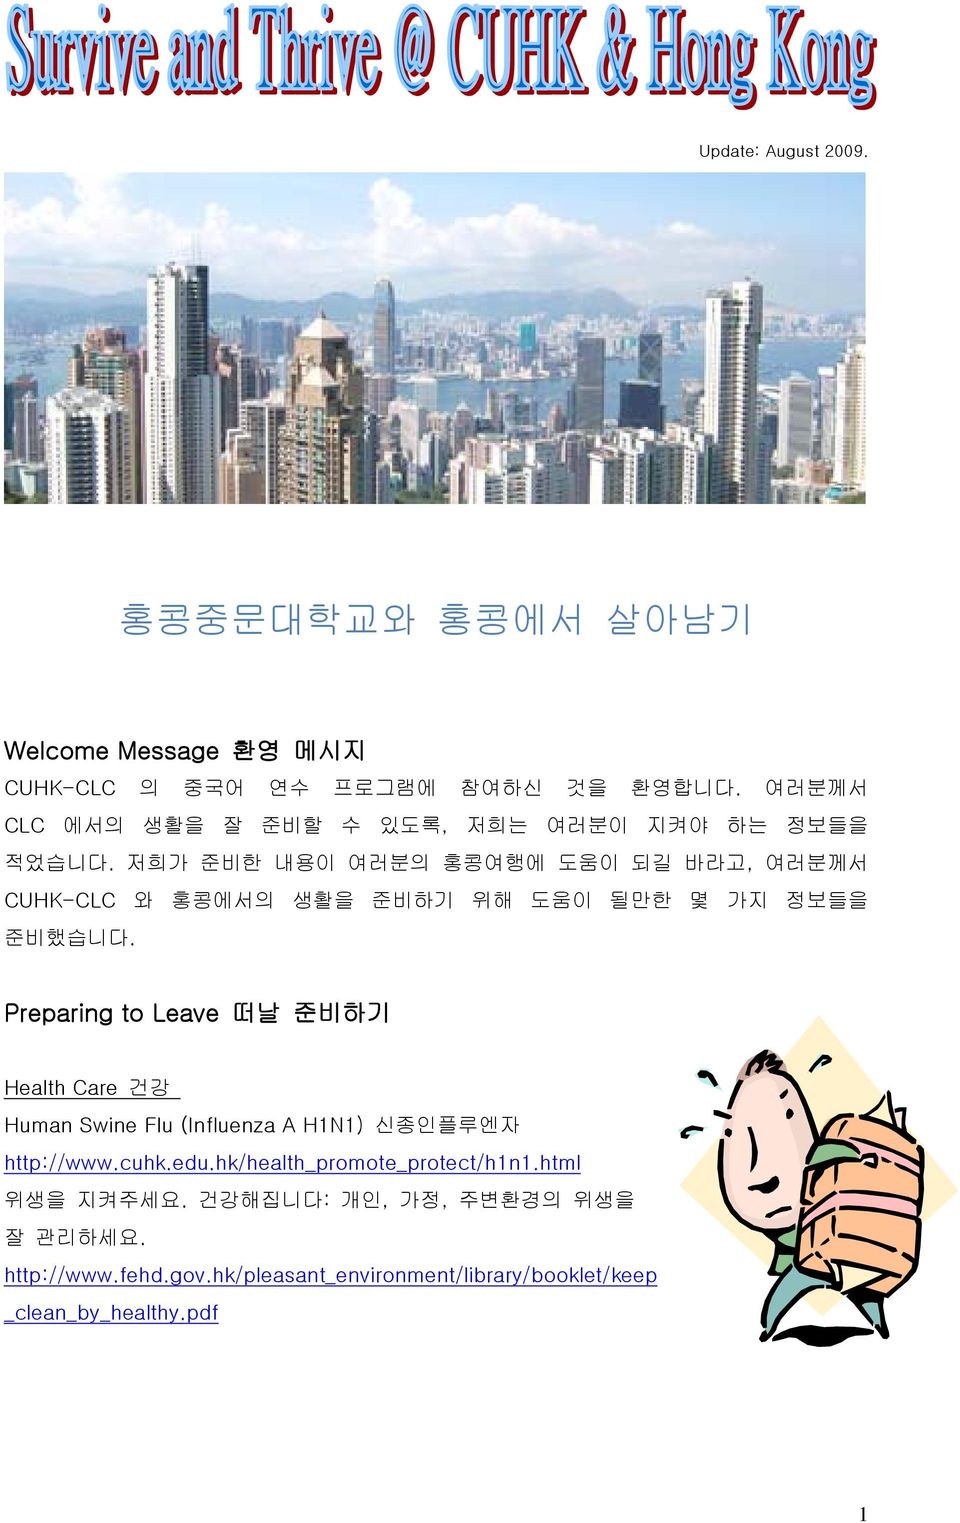 저희가 준비한 내용이 여러분의 홍콩여행에 도움이 되길 바라고, 여러분께서 CUHK-CLC 와 홍콩에서의 생활을 준비하기 위해 도움이 될만한 몇 가지 정보들을 준비했습니다.